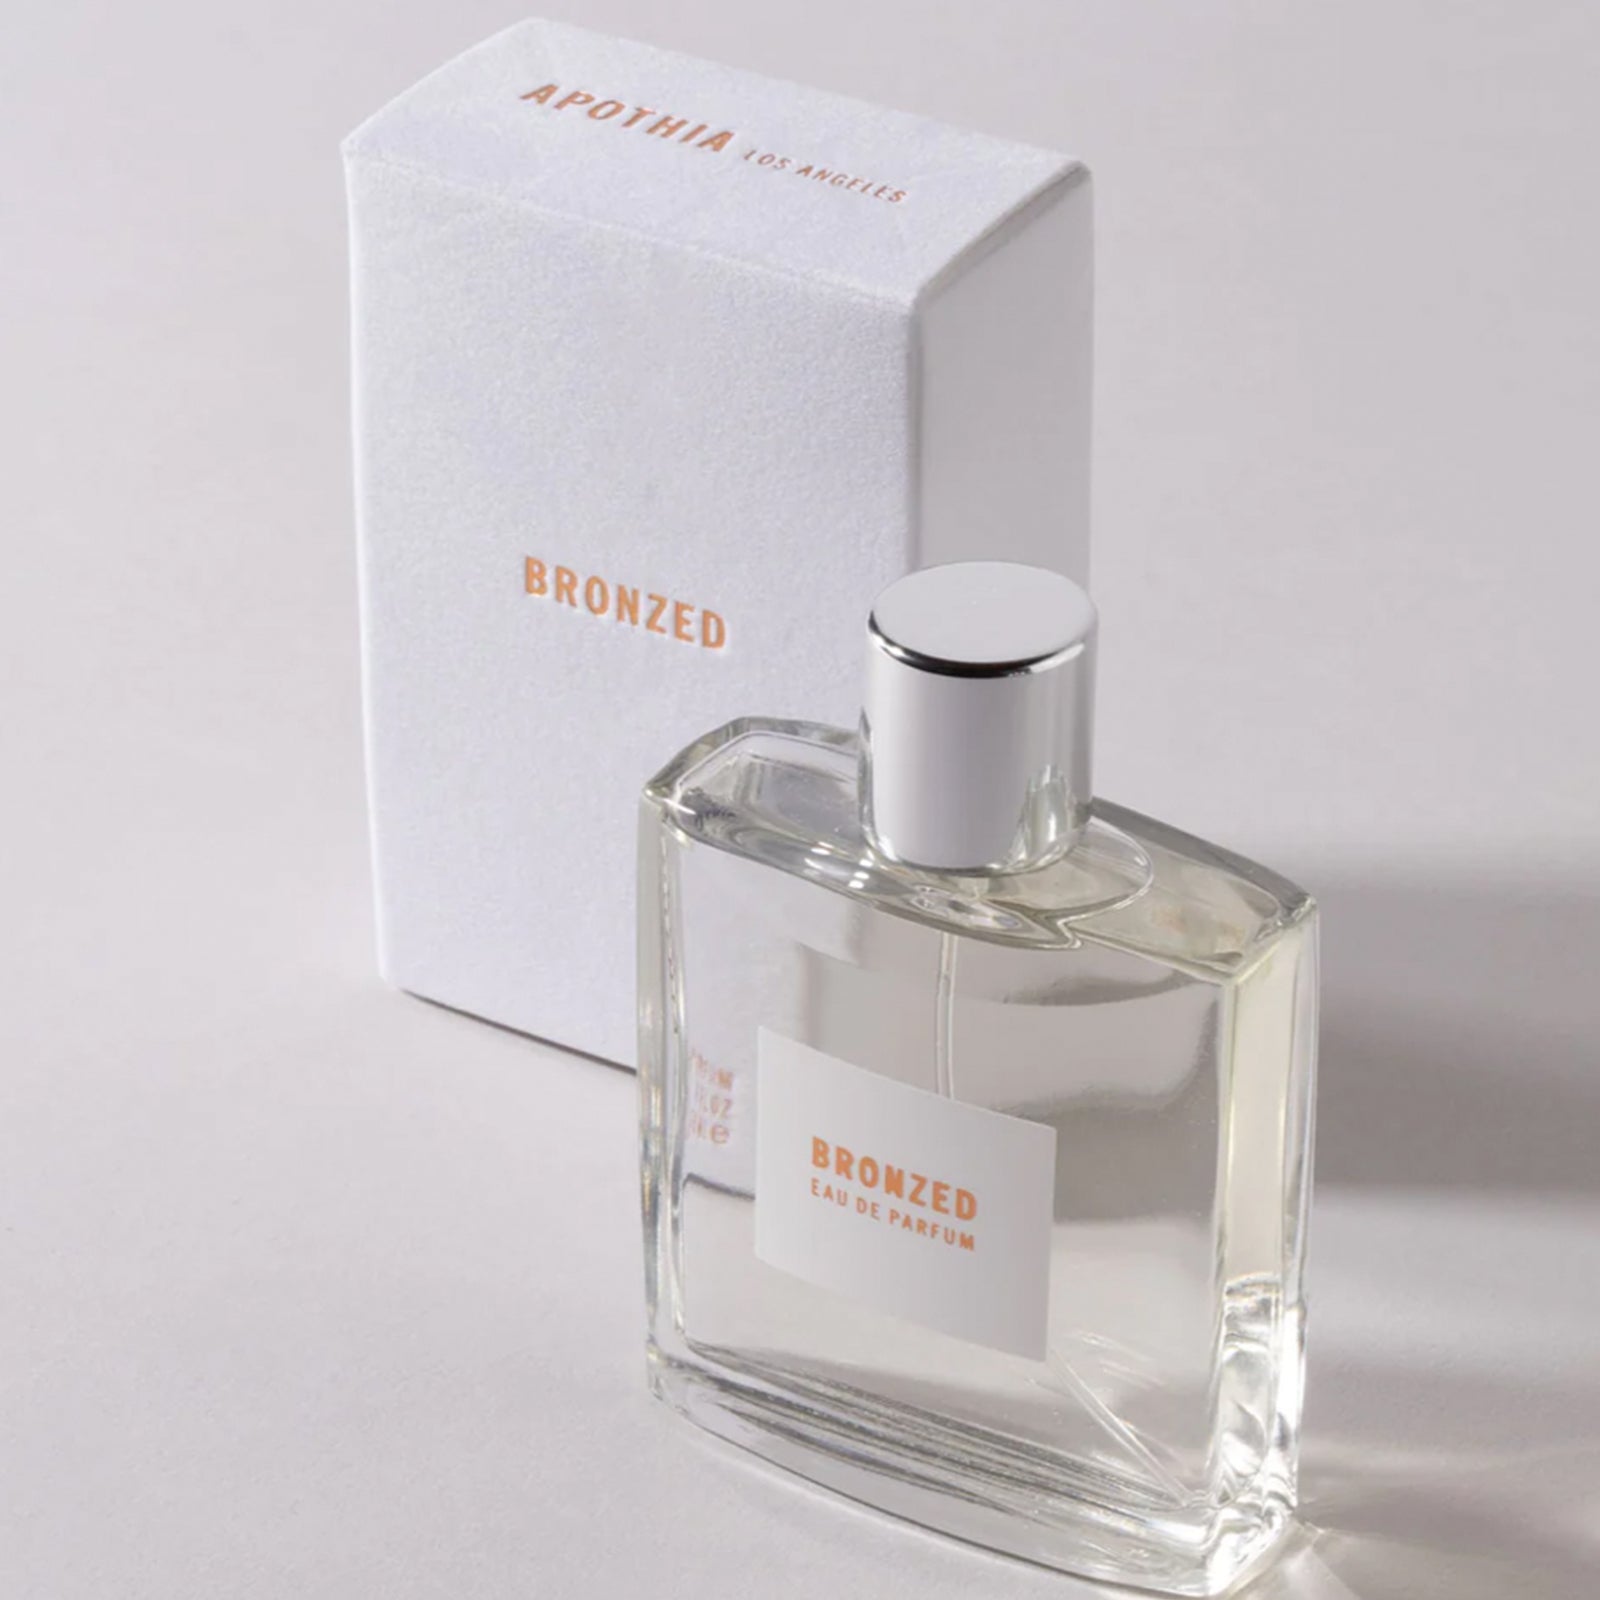 APOTHIA / BRONZED eau de parfum 50ml